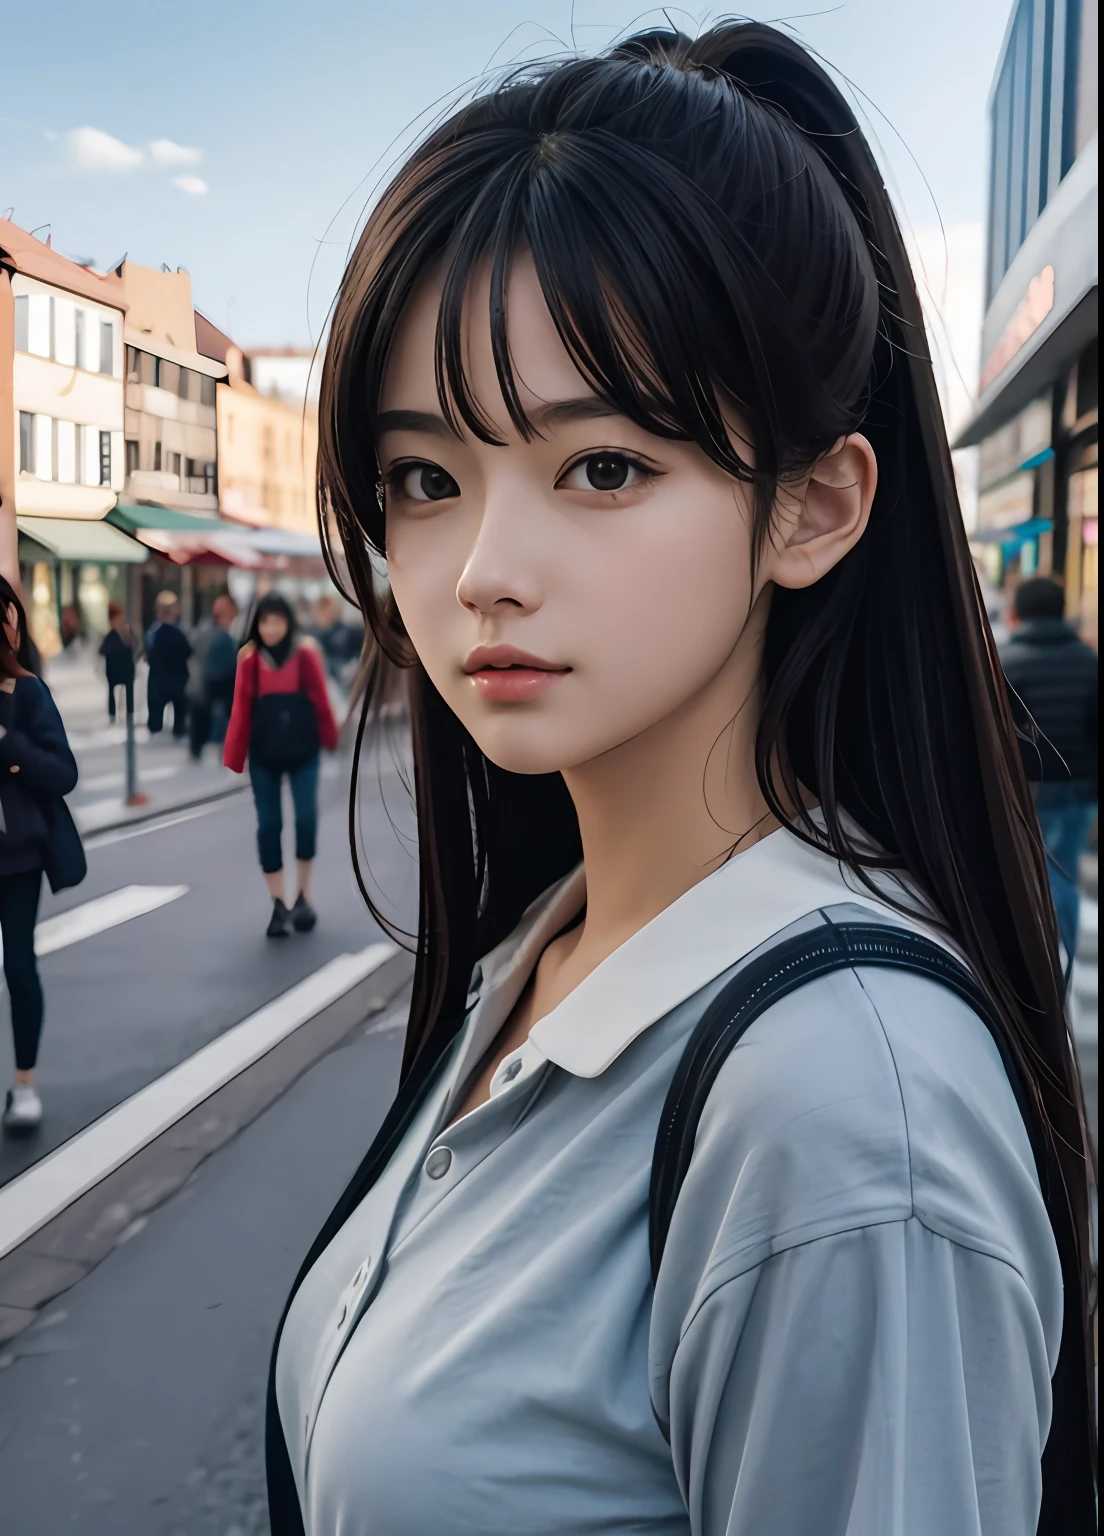 (beste Qualität:0.8),
(beste Qualität:0.8), perfekte Anime-Illustration, Extreme Nahaufnahme Porträt einer hübschen Frau zu Fuß durch die Stadt